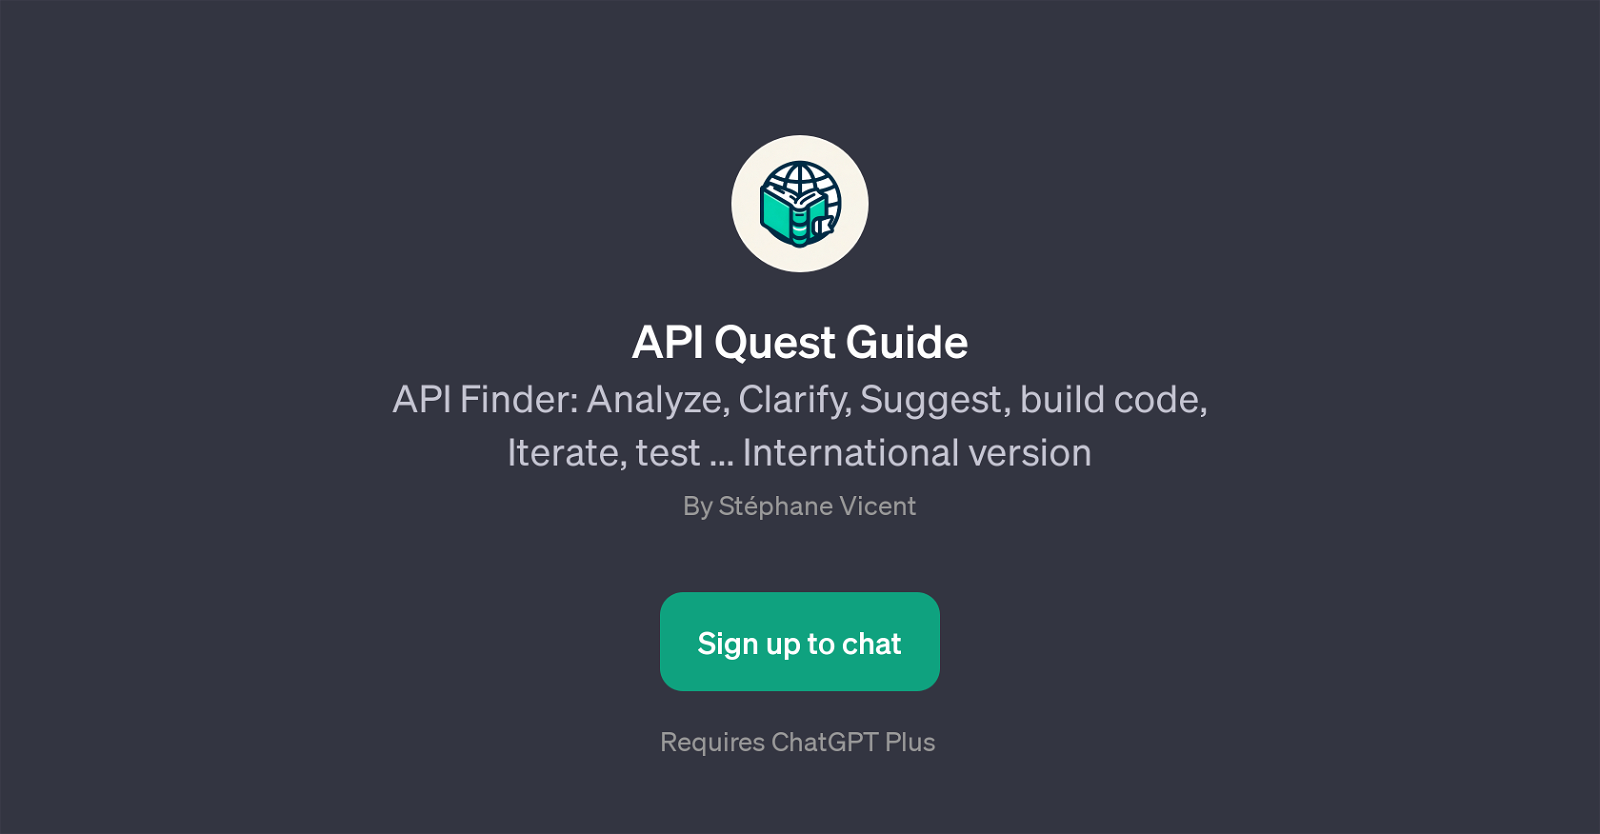 API Quest Guide website